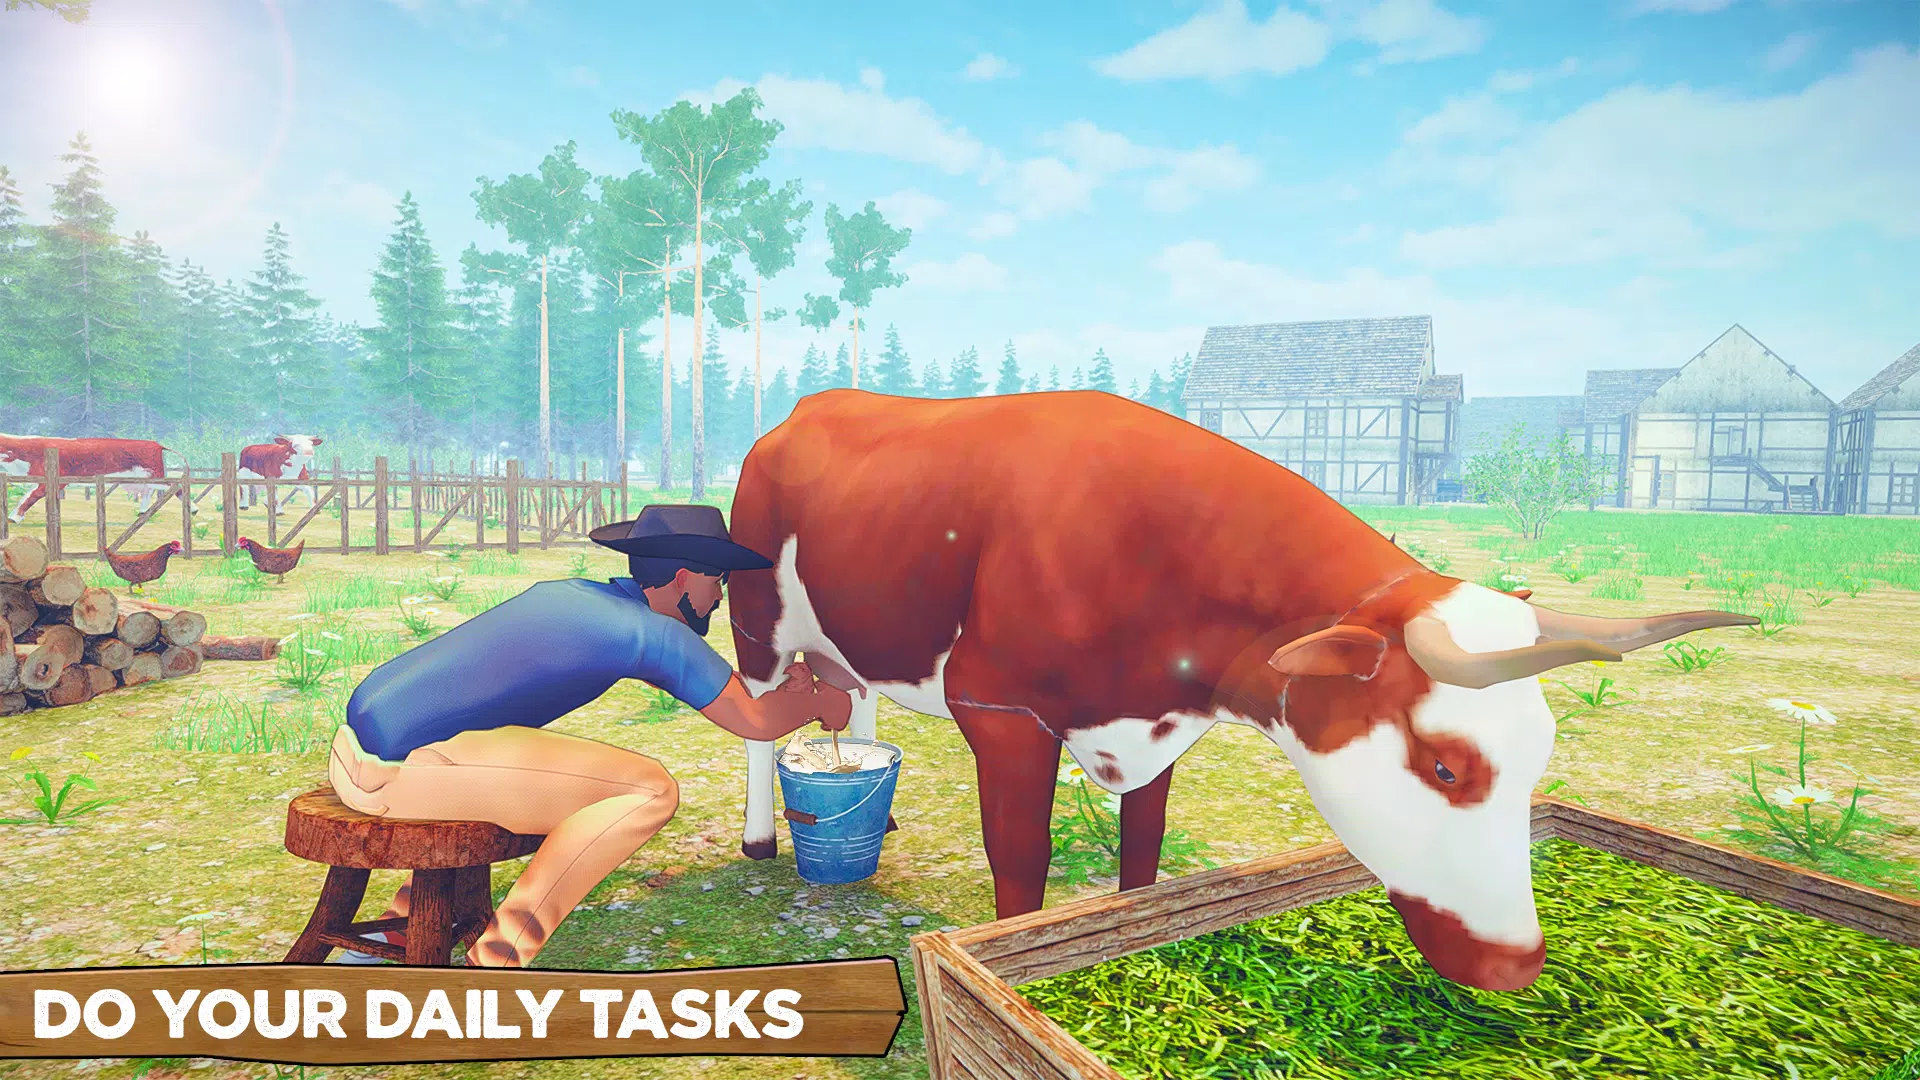 Baixe o Ranch simulator Farming Advice MOD APK v1.0 para Android